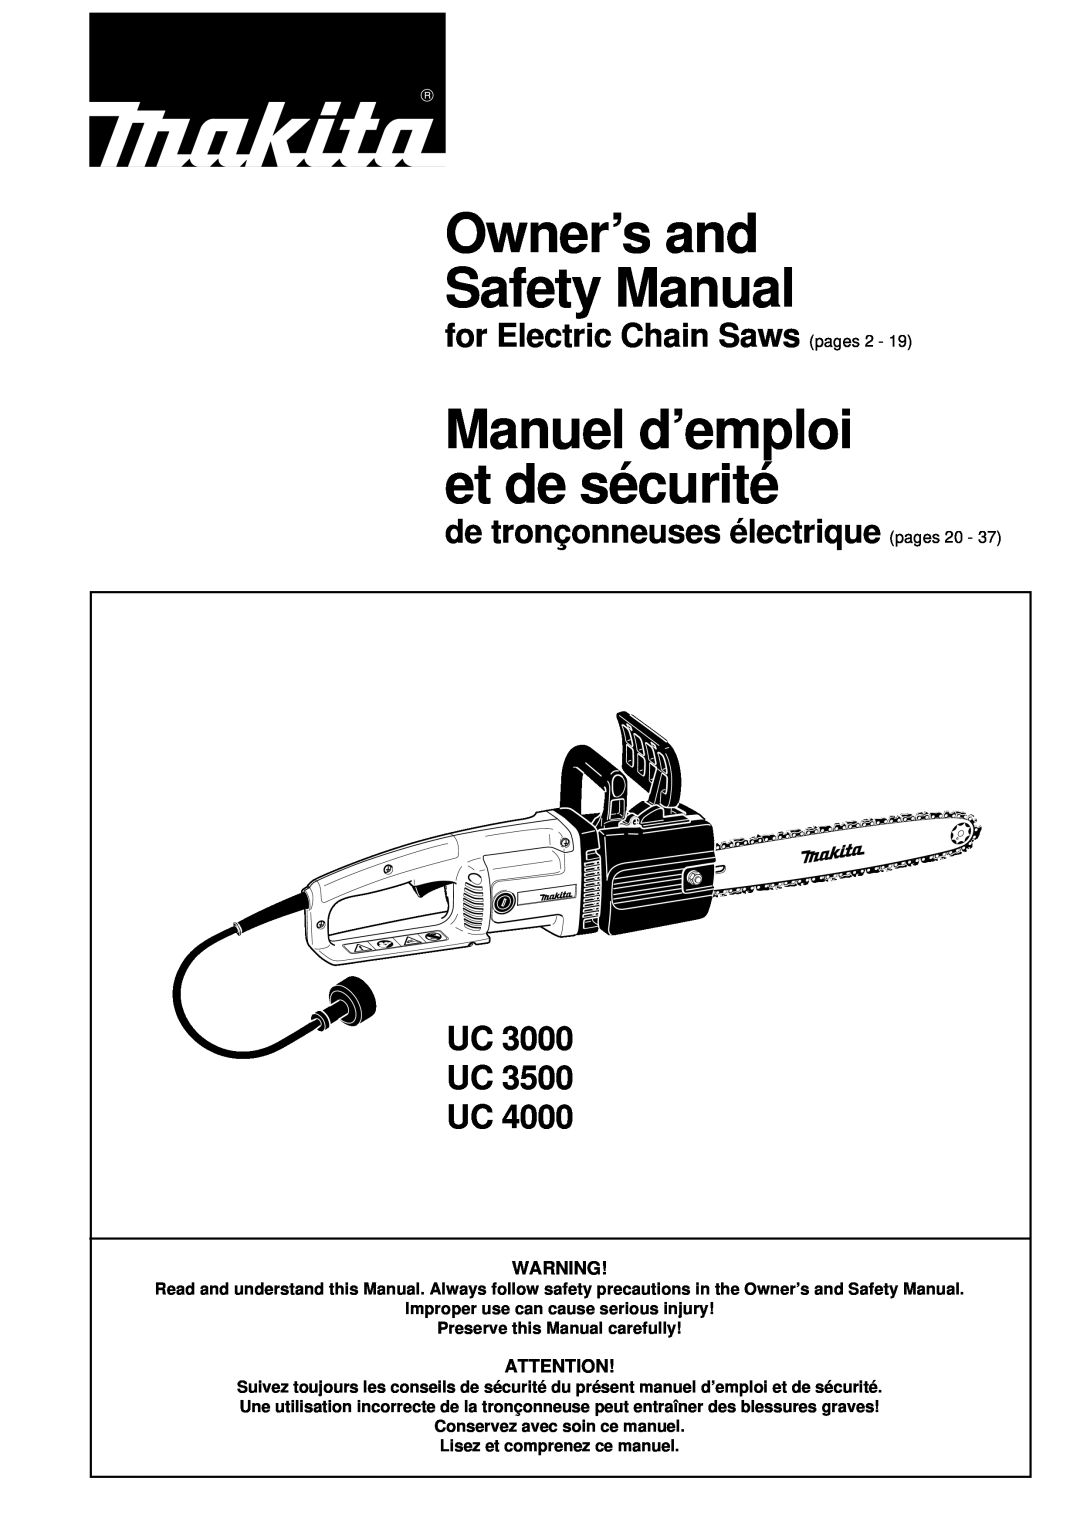 Makita UC 3000, UC 3500, UC 4000 manual for Electric Chain Saws pages, de tronçonneuses électrique pages 20 - UC UC UC 